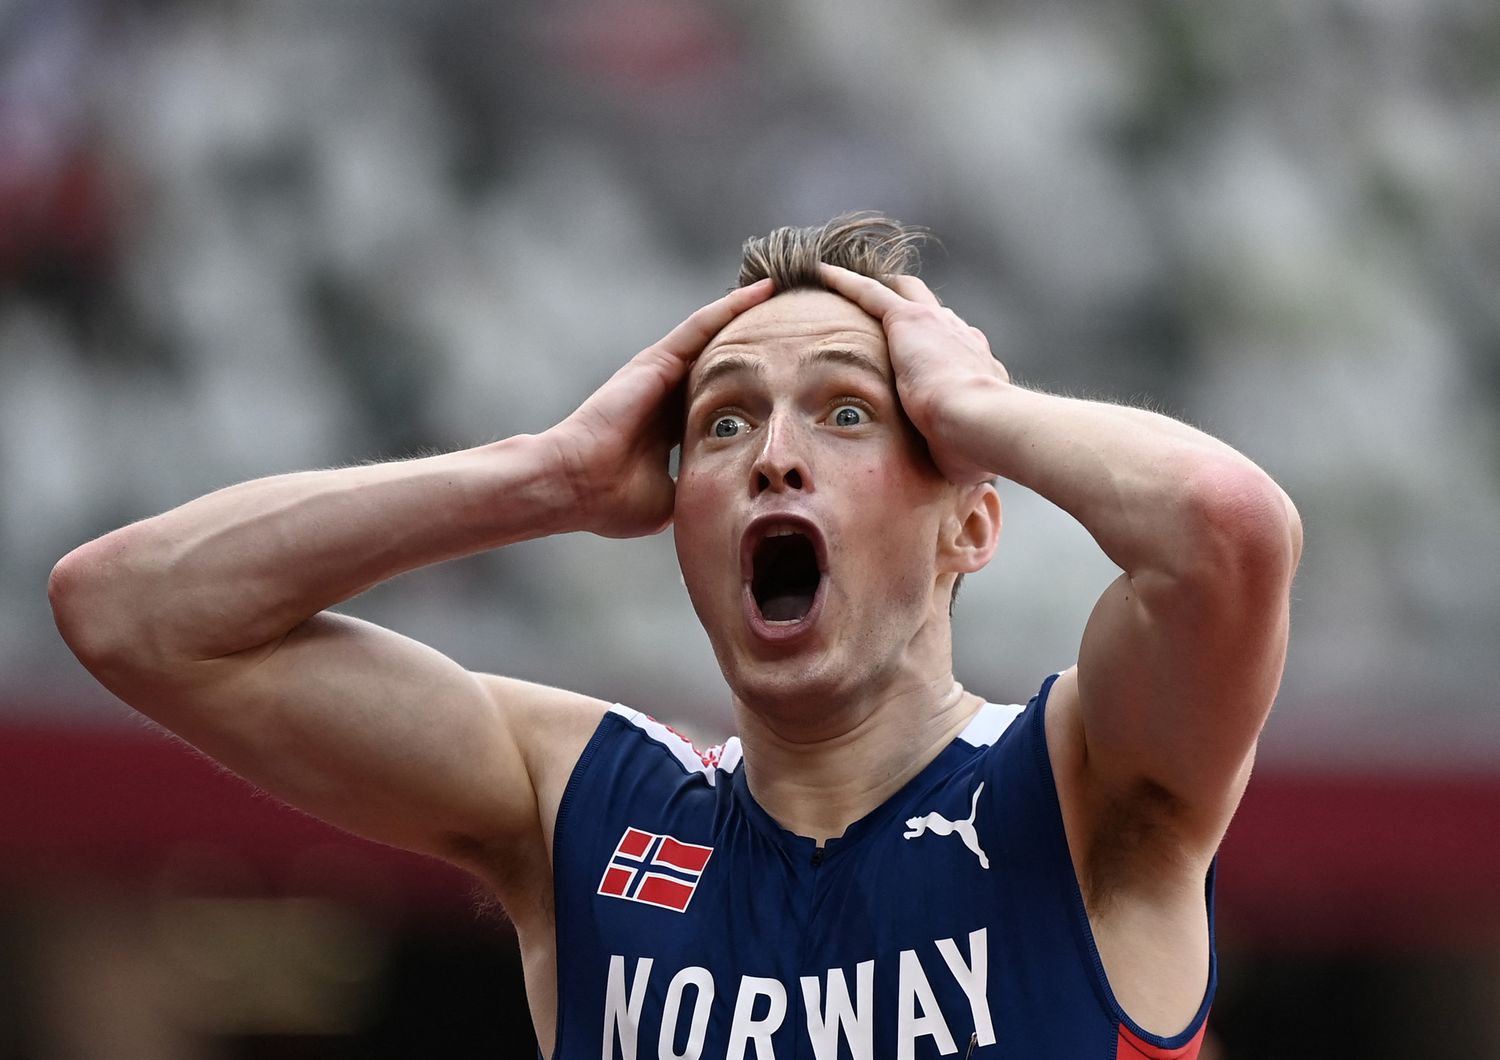 Il norvegese Karsten Warholm esulta dopo aver vinto i 400 metri ostacoli, battendo il record mondiale, alle Olimpiadi di Tokyo